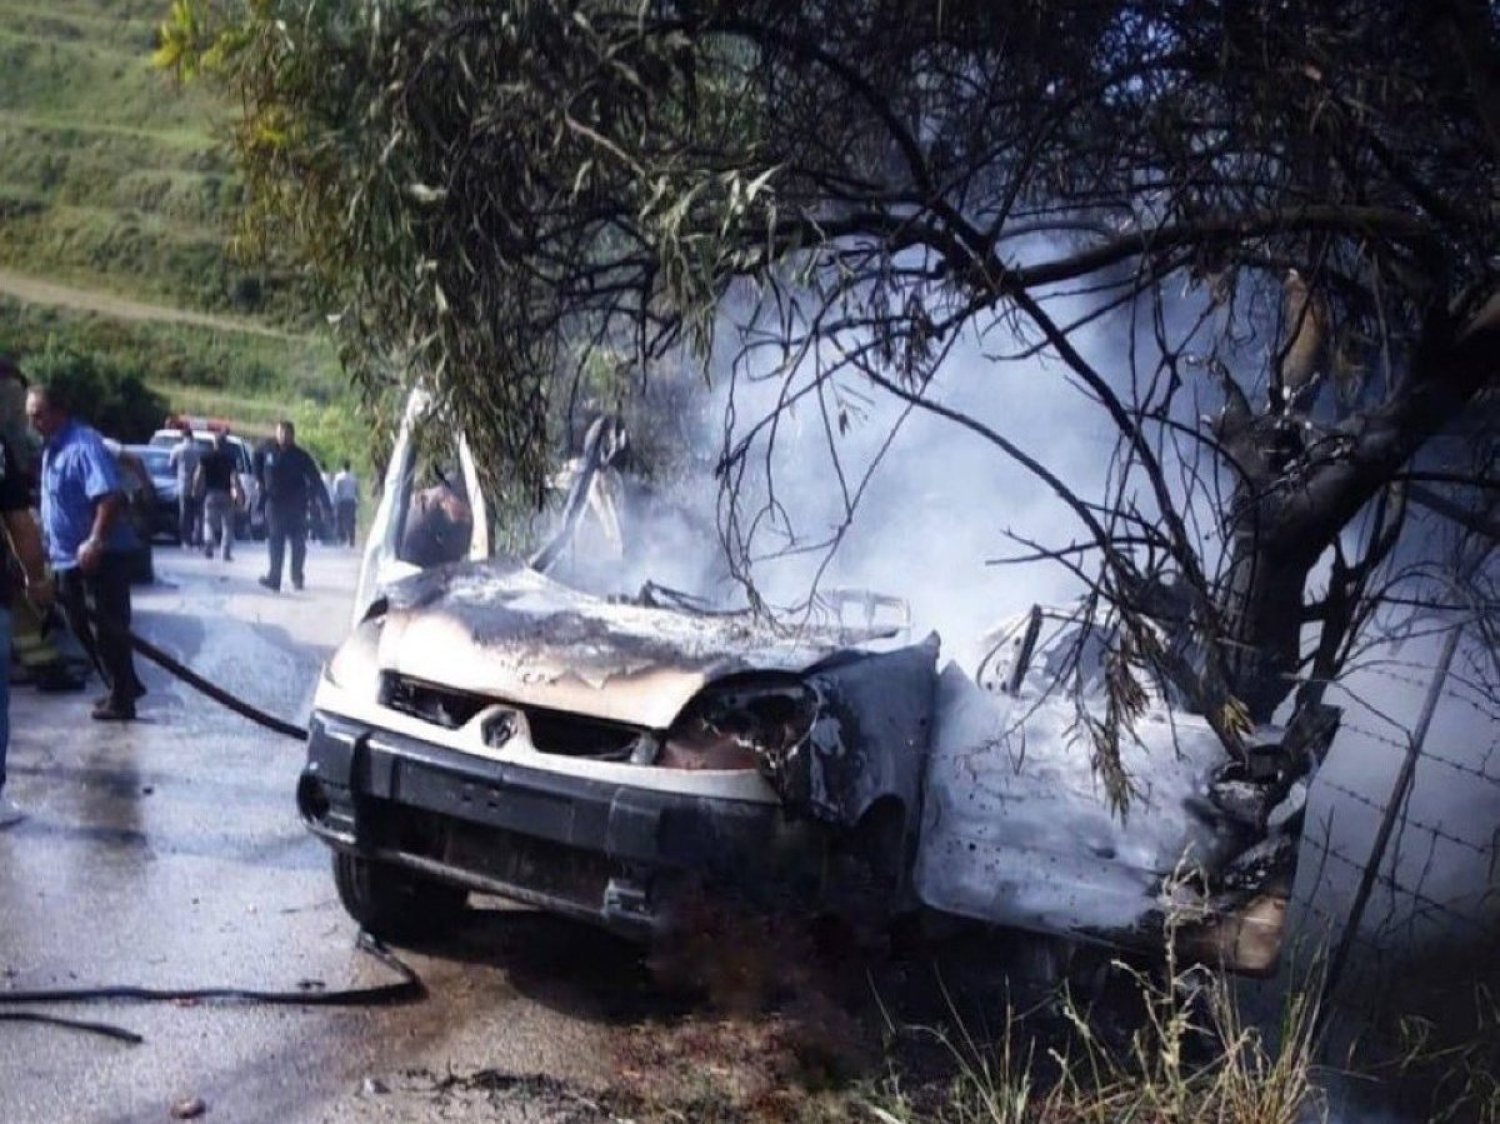 السيارة التي استهدفت بغارة إسرائيلية في بلدة بافليه الجنوبية وأدت إلى مقتل 4 عناصر من «حزب الله» (متداولة على وسائل التواصل الاجتماعي)